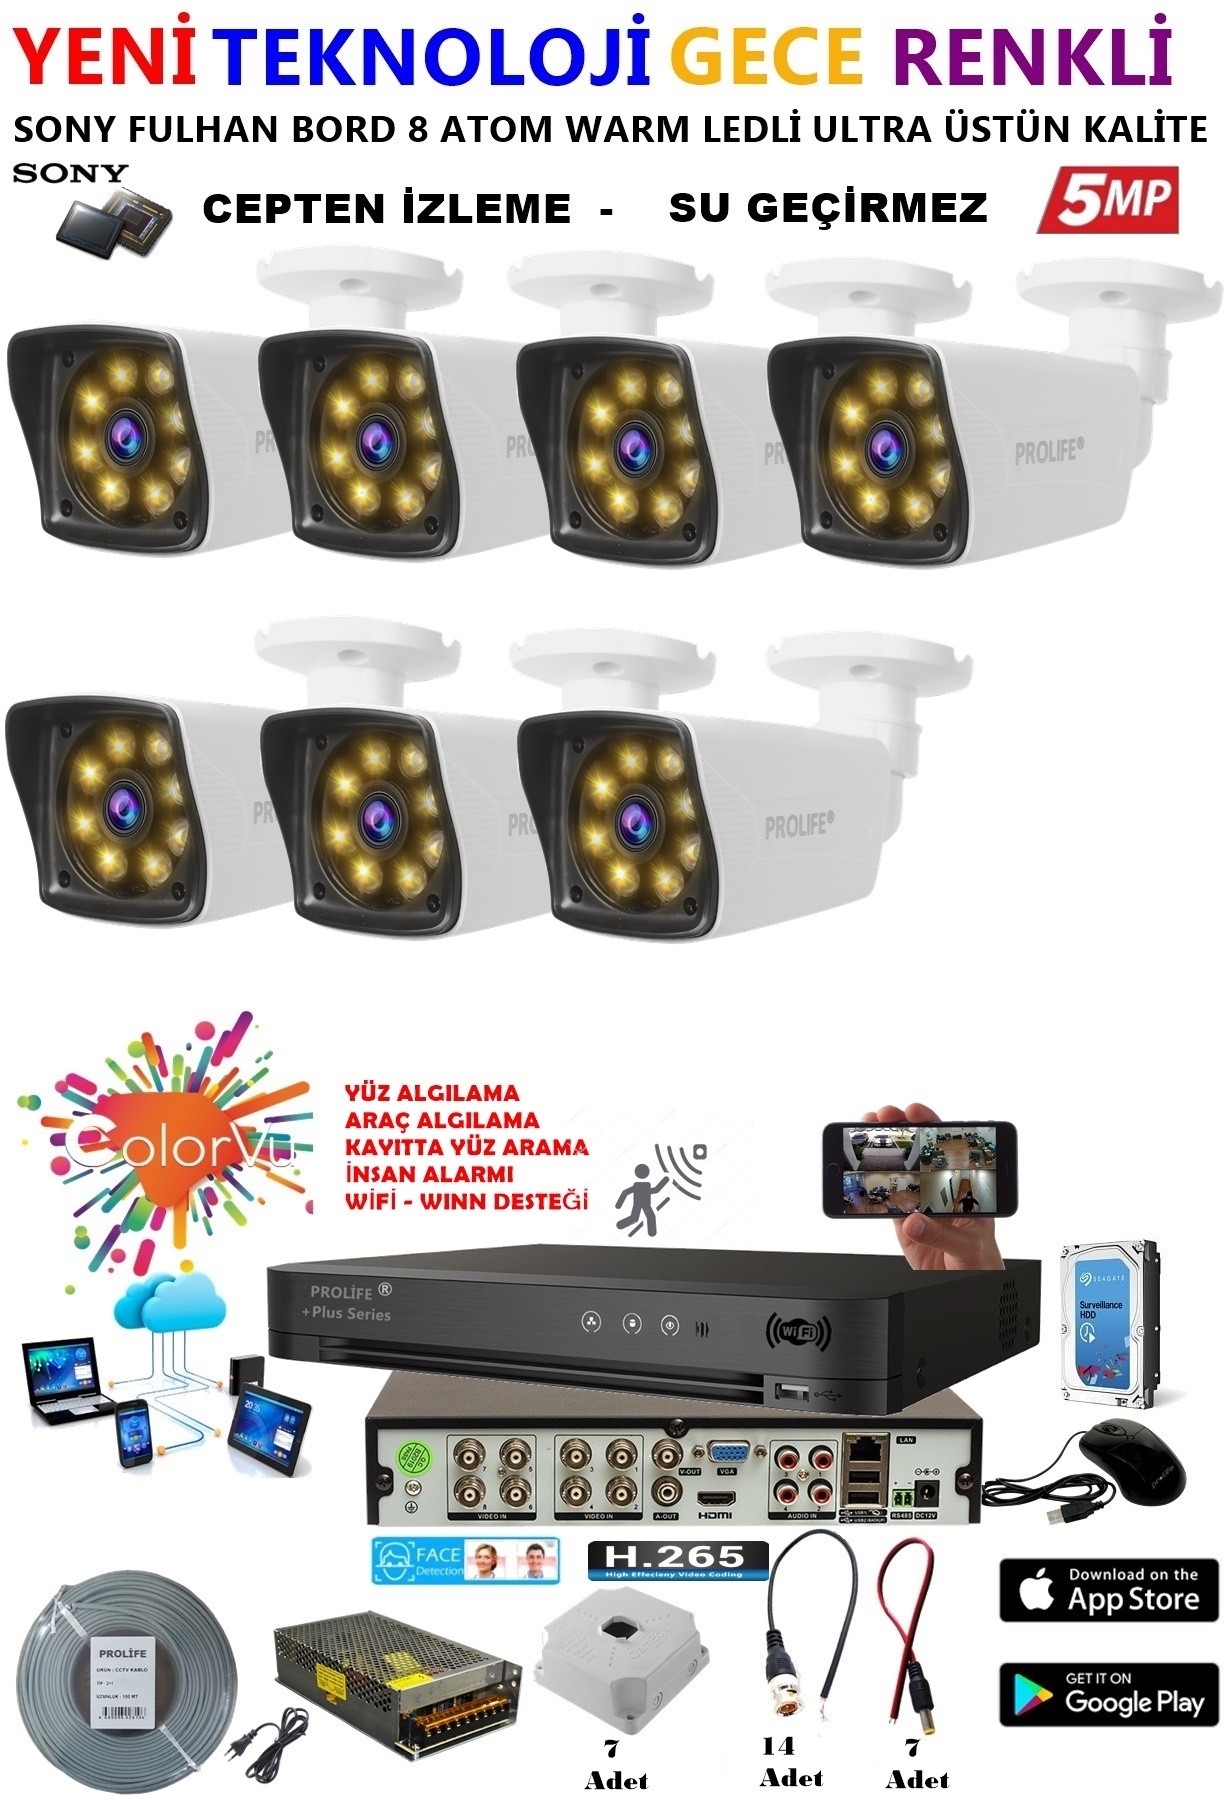 7 Kameralı 5 MP Gece Renkli Yapay Zeka Yüz ve Araç Algılamalı Olay Anı Bildirimli Kuruluma Hazır Kamera Seti